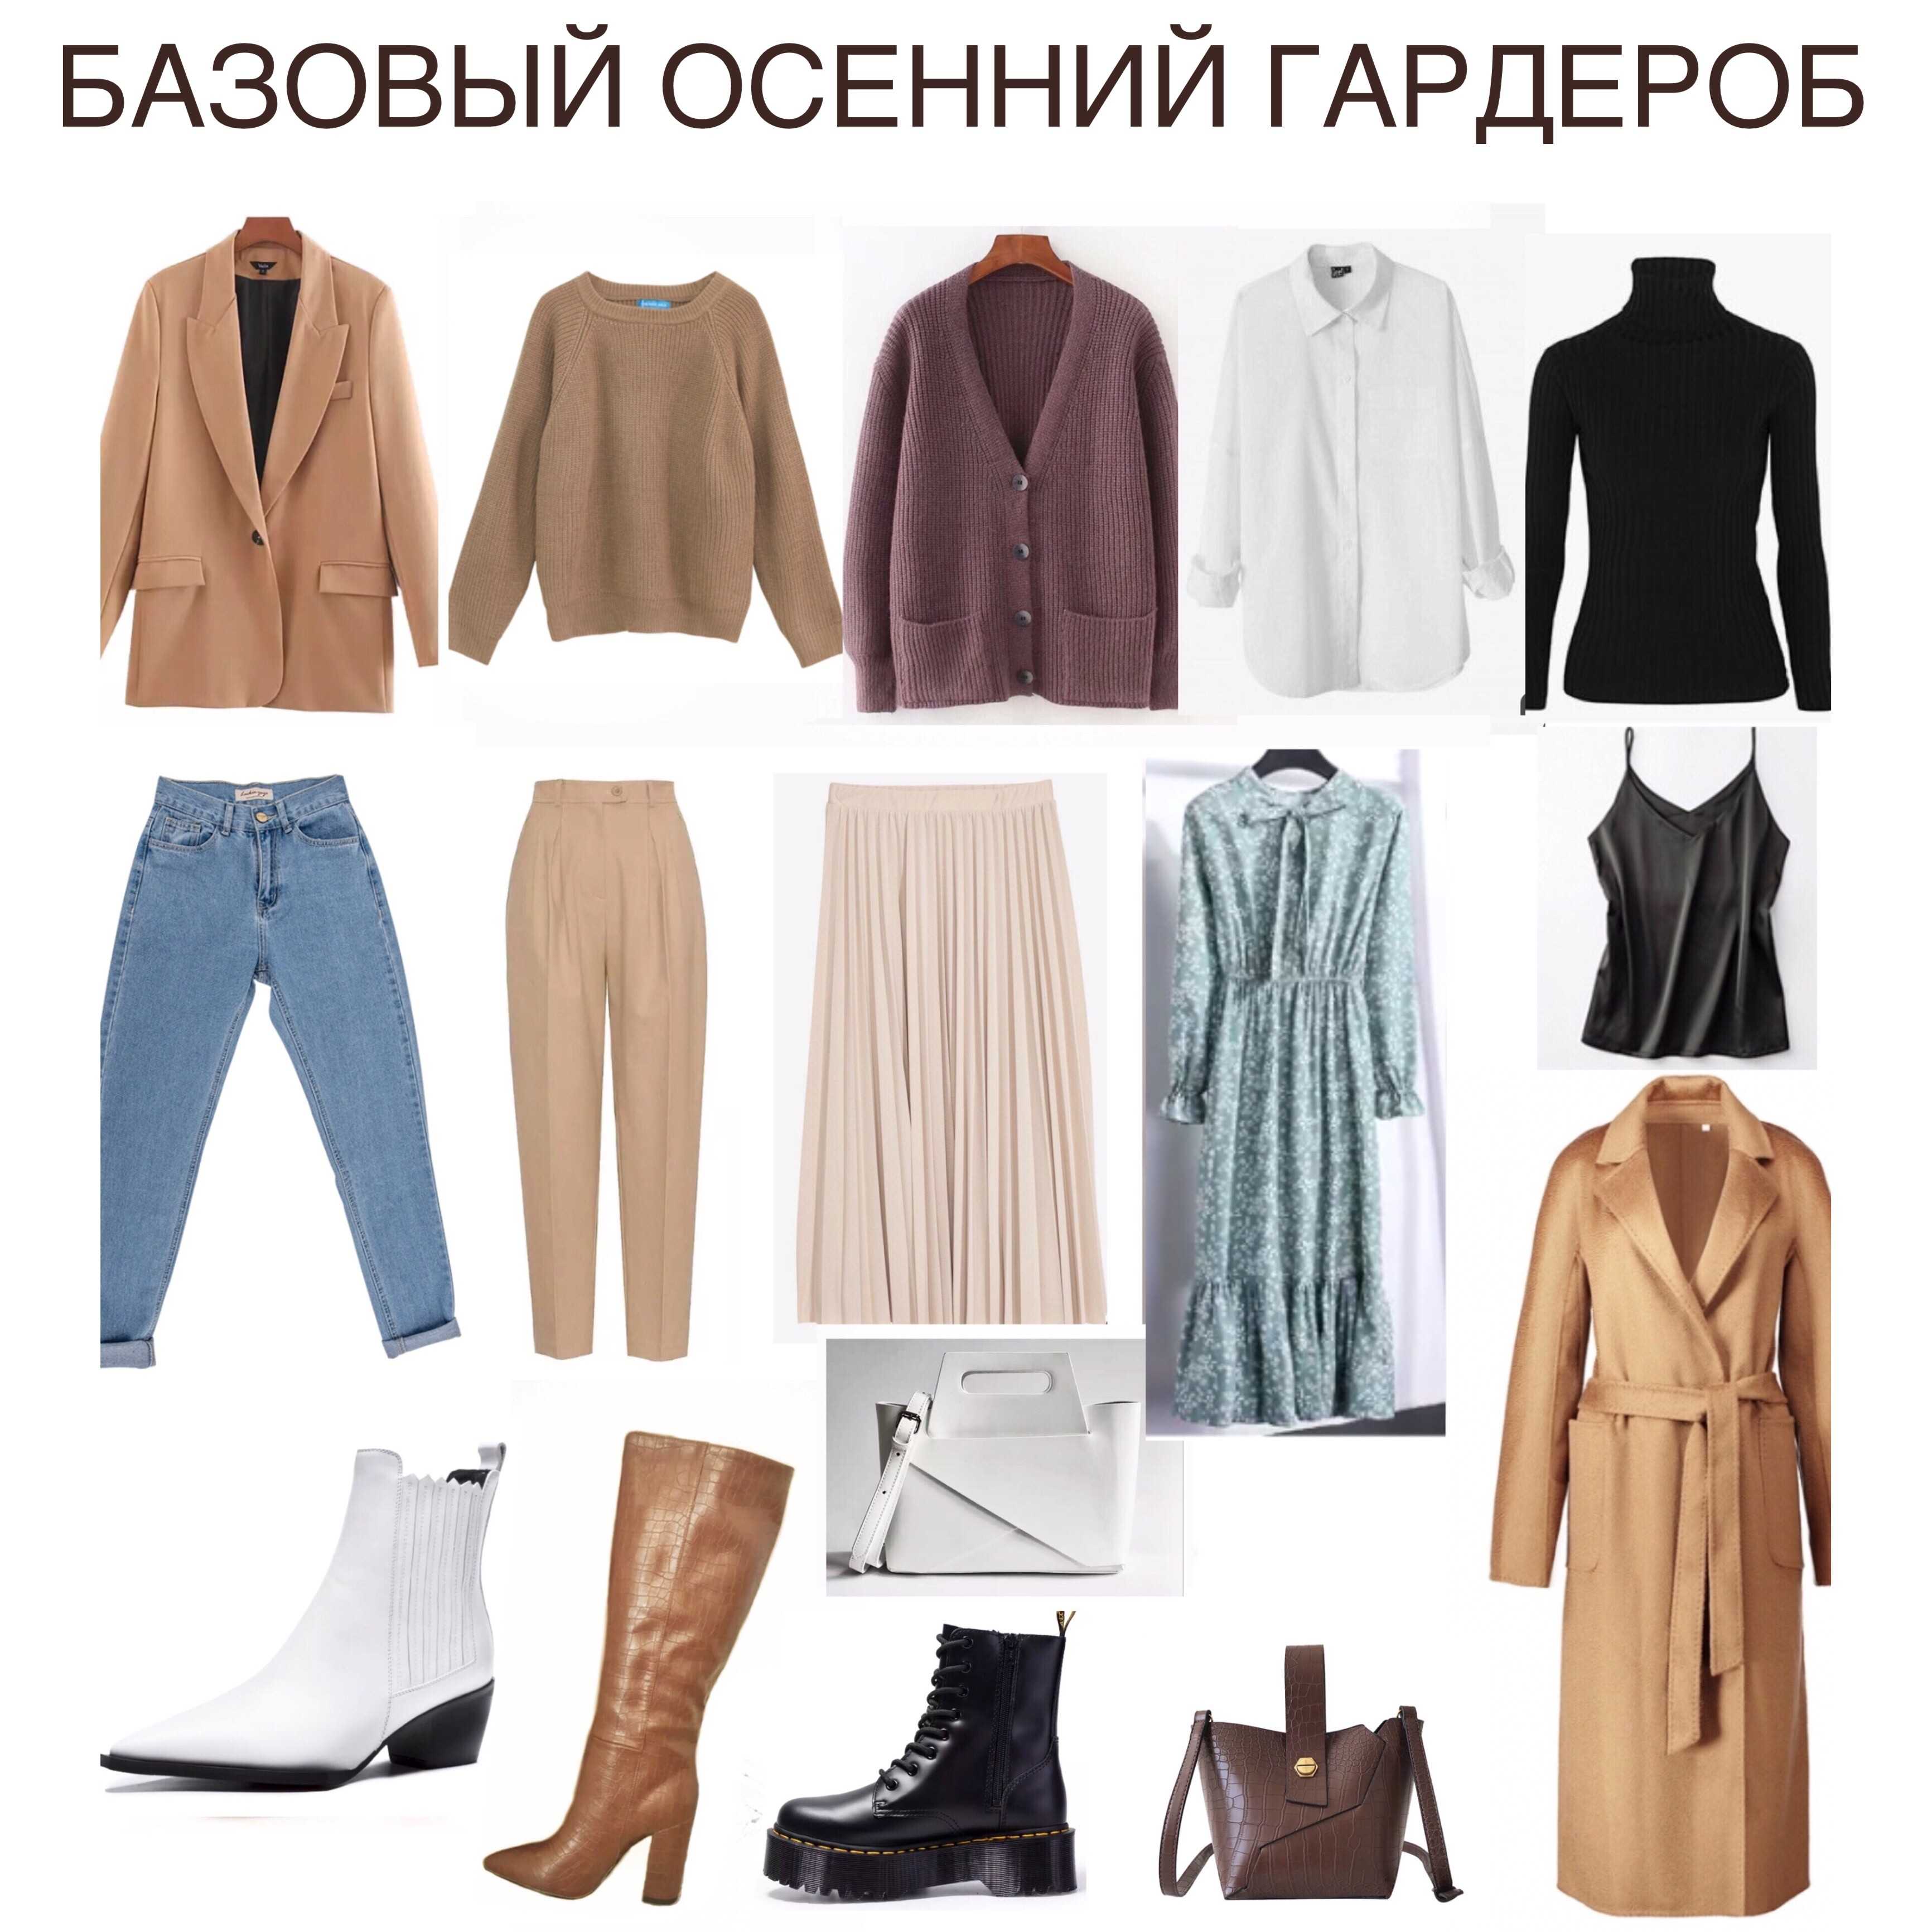 Одежда для полных женщин с животом 50-60 лет